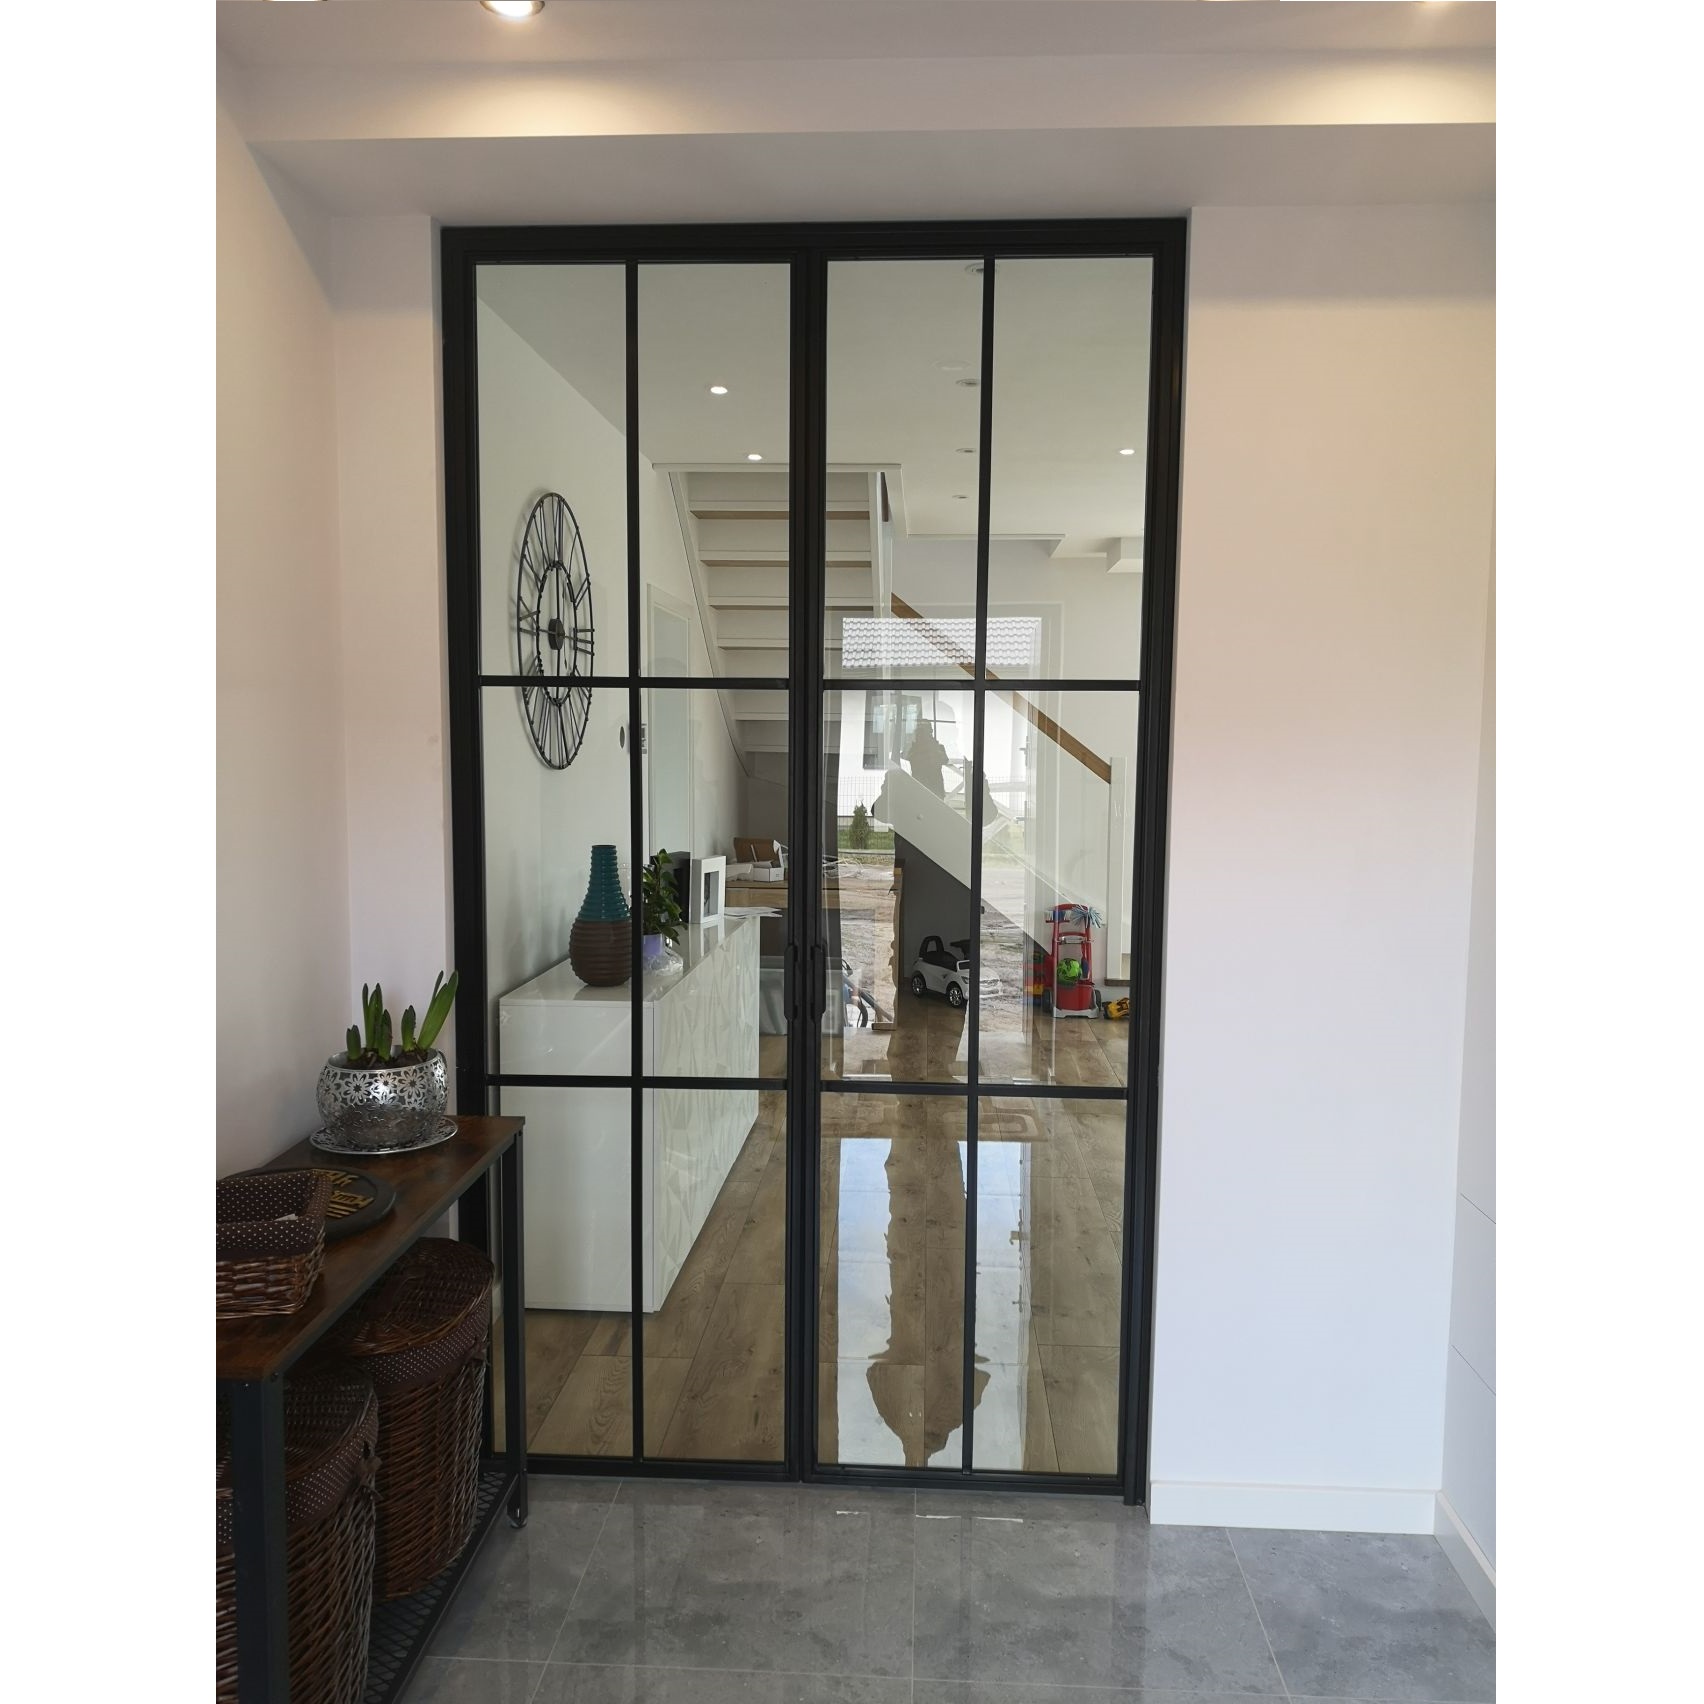 Piękne dwuskrzydłowe szklane drzwi  LOFT loftowe industrialne w holu wejściowym Kasi i Daniela S.